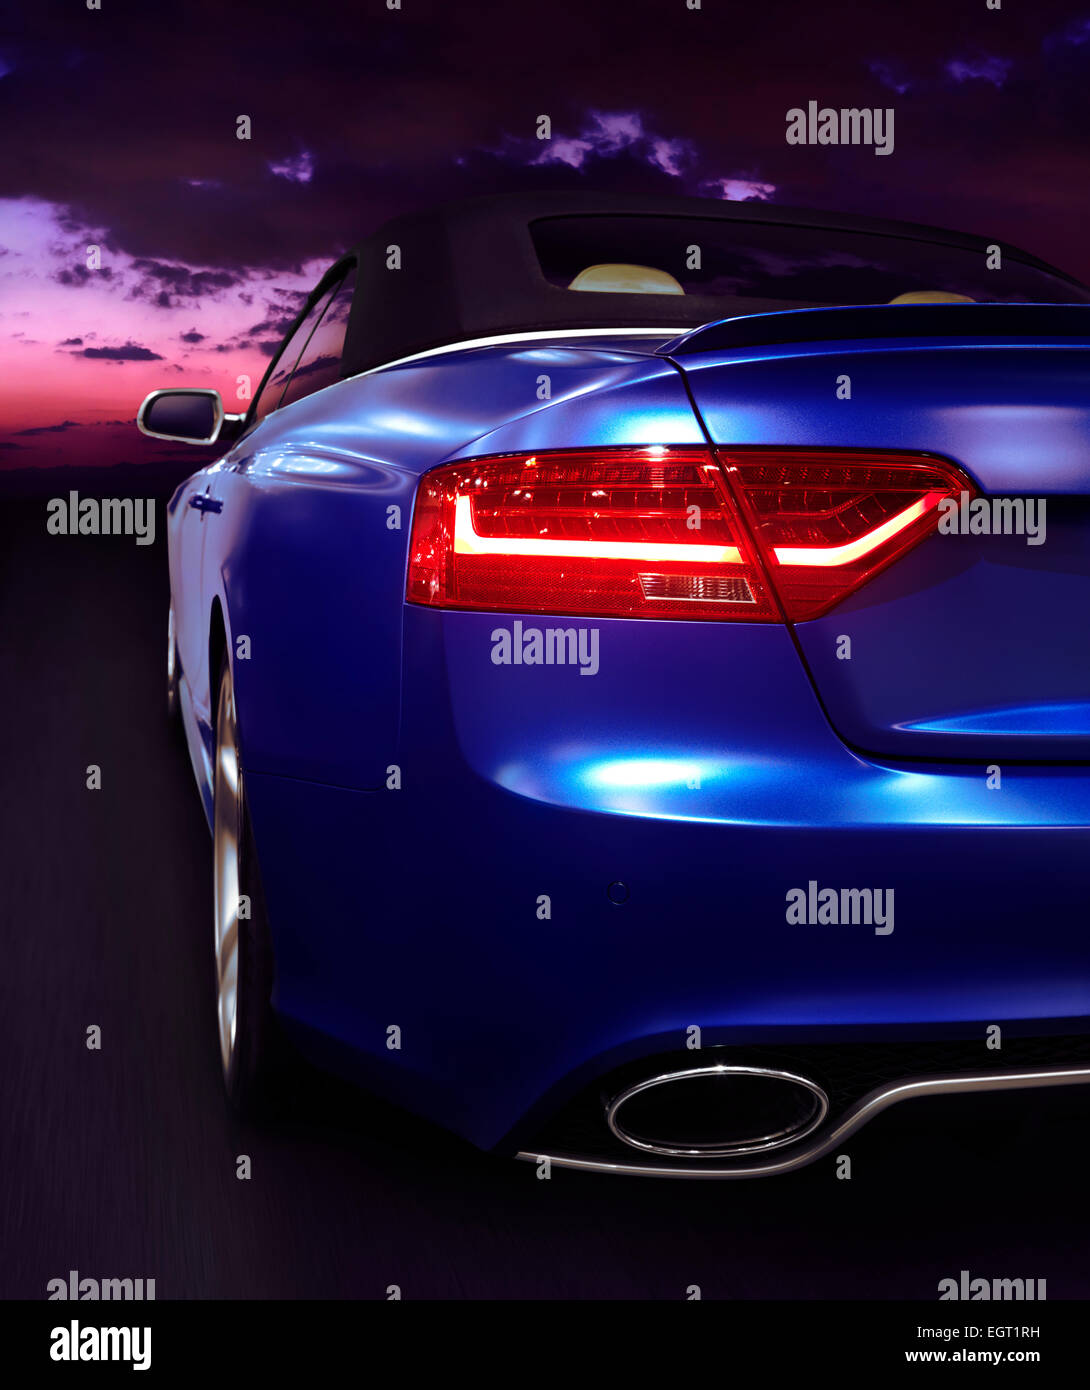 Primer plano de una luz en la parte trasera de un coche azul en una carretera al atardecer. 2015 Audi RS 5 cabriolet. Foto de stock